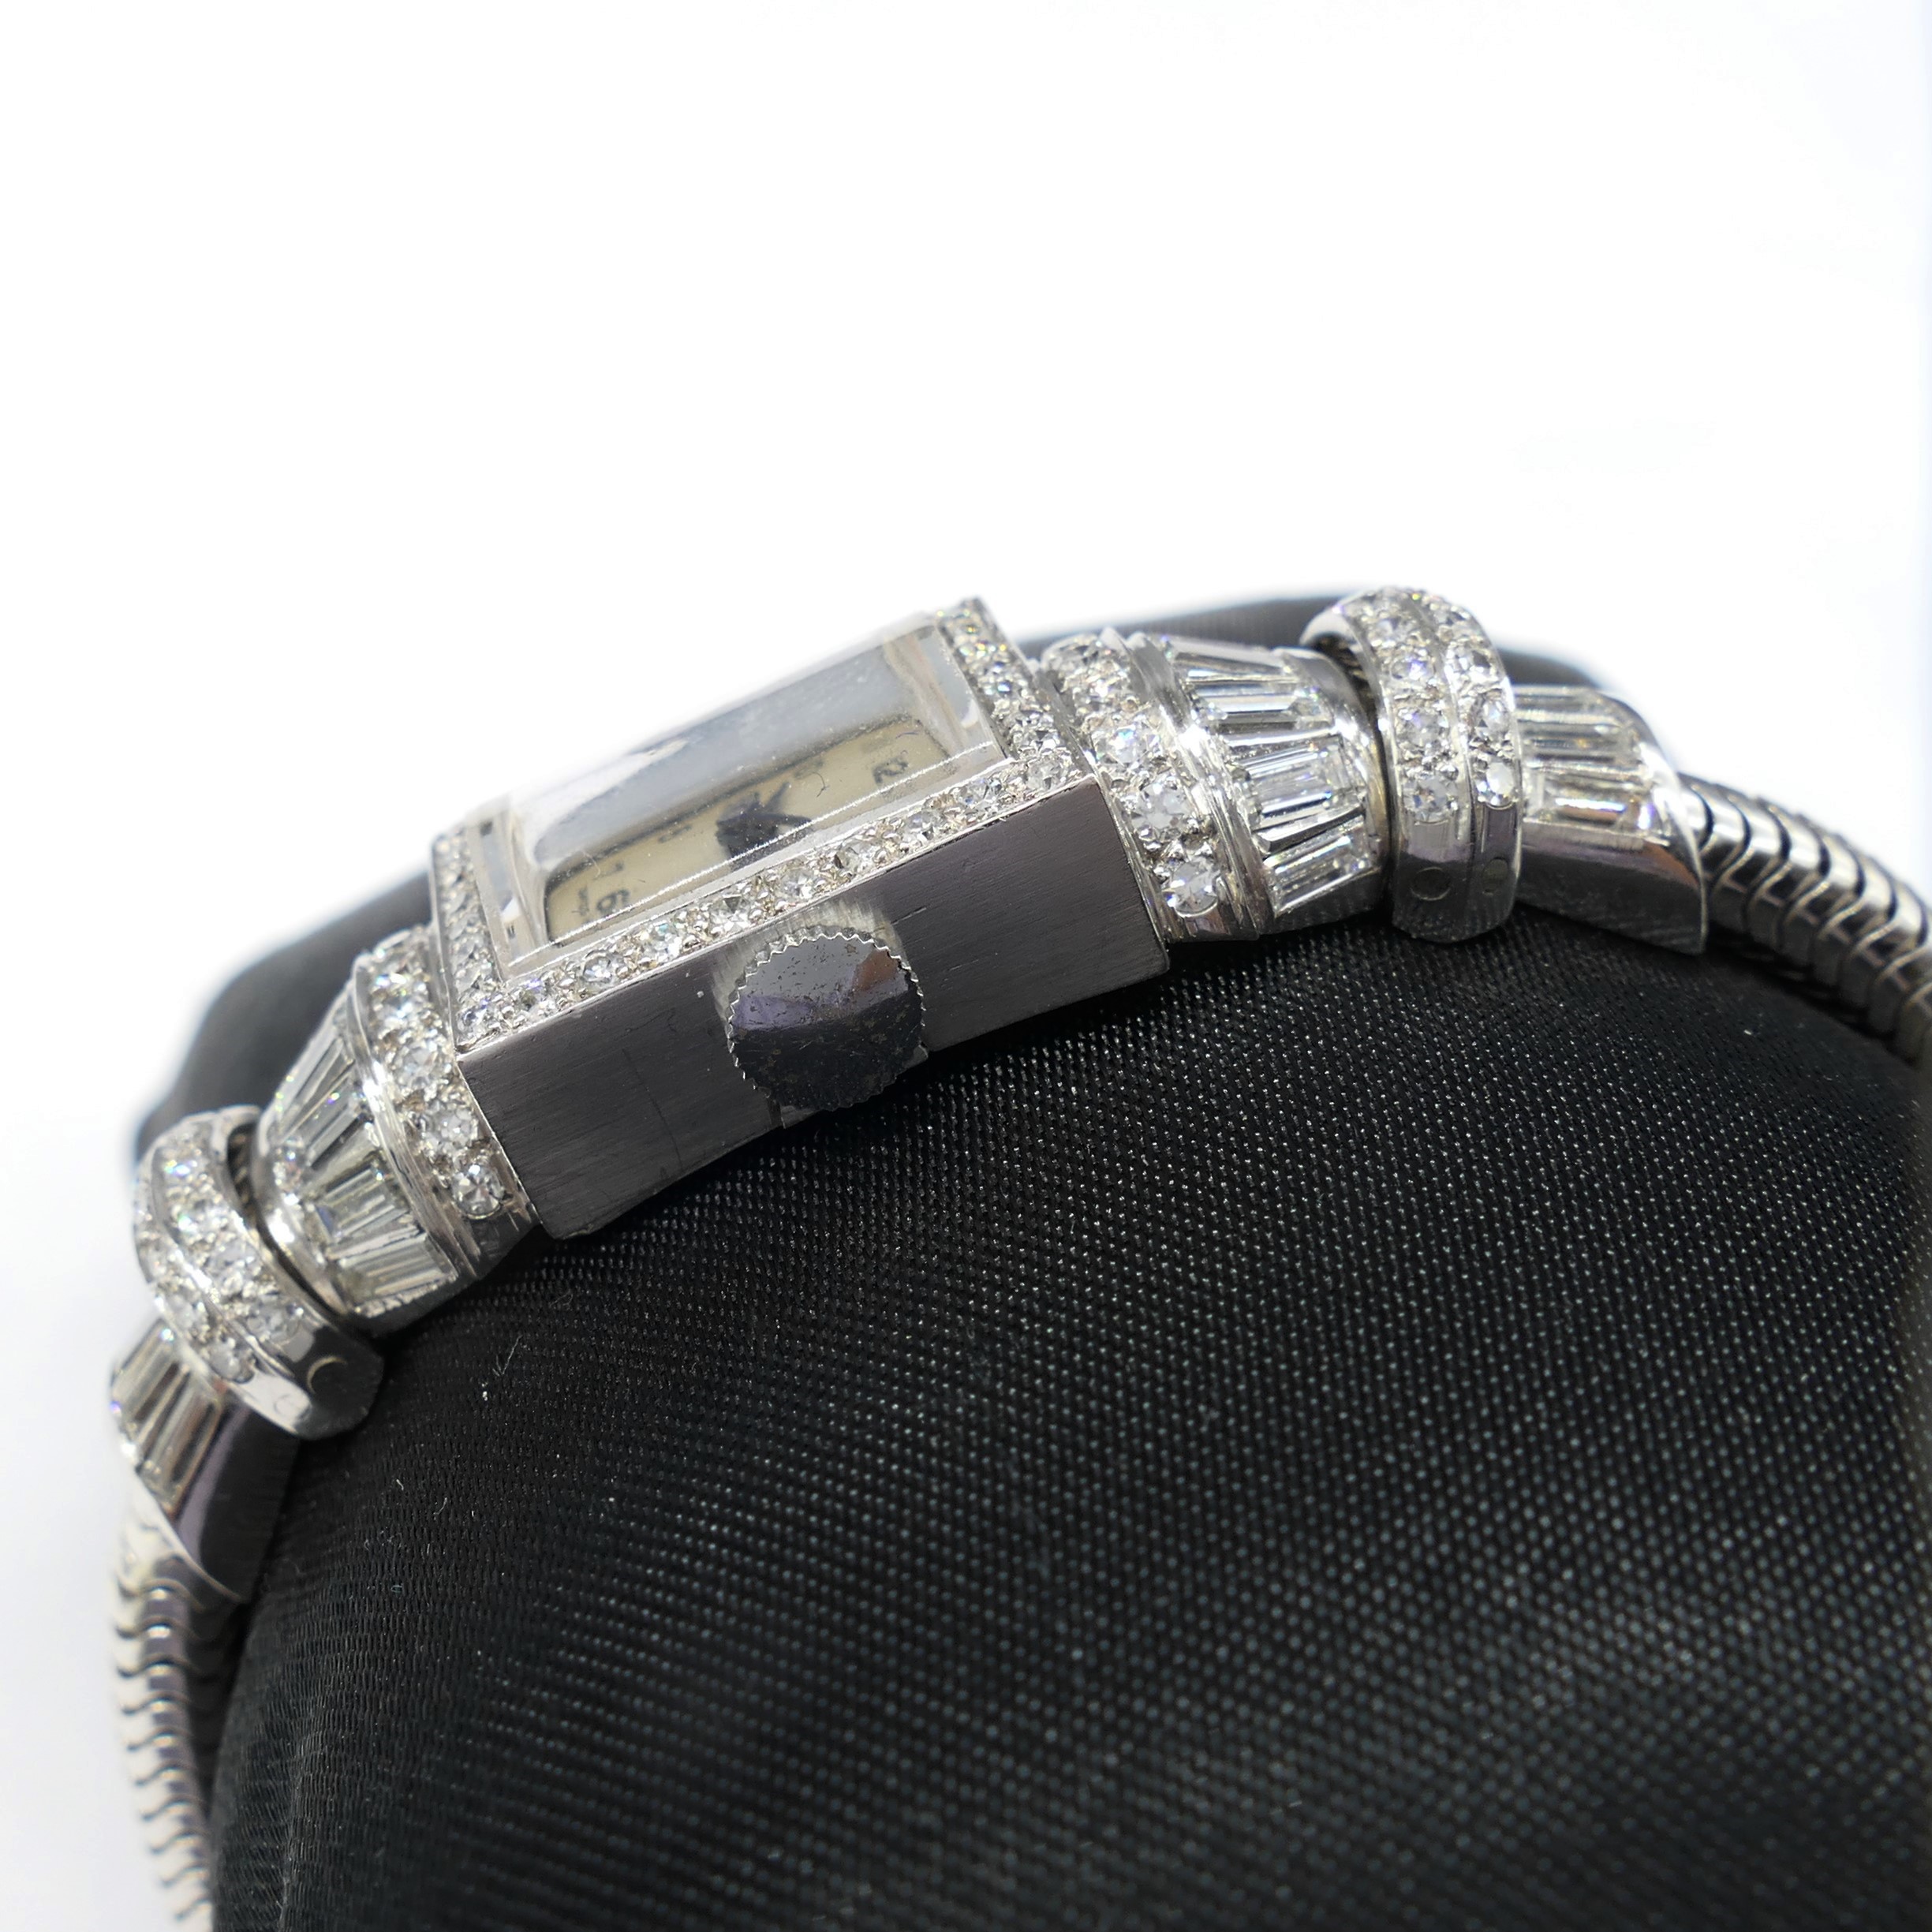 Vintage 3.60 carat diamond ladies mechanical wrist - Image 8 of 9